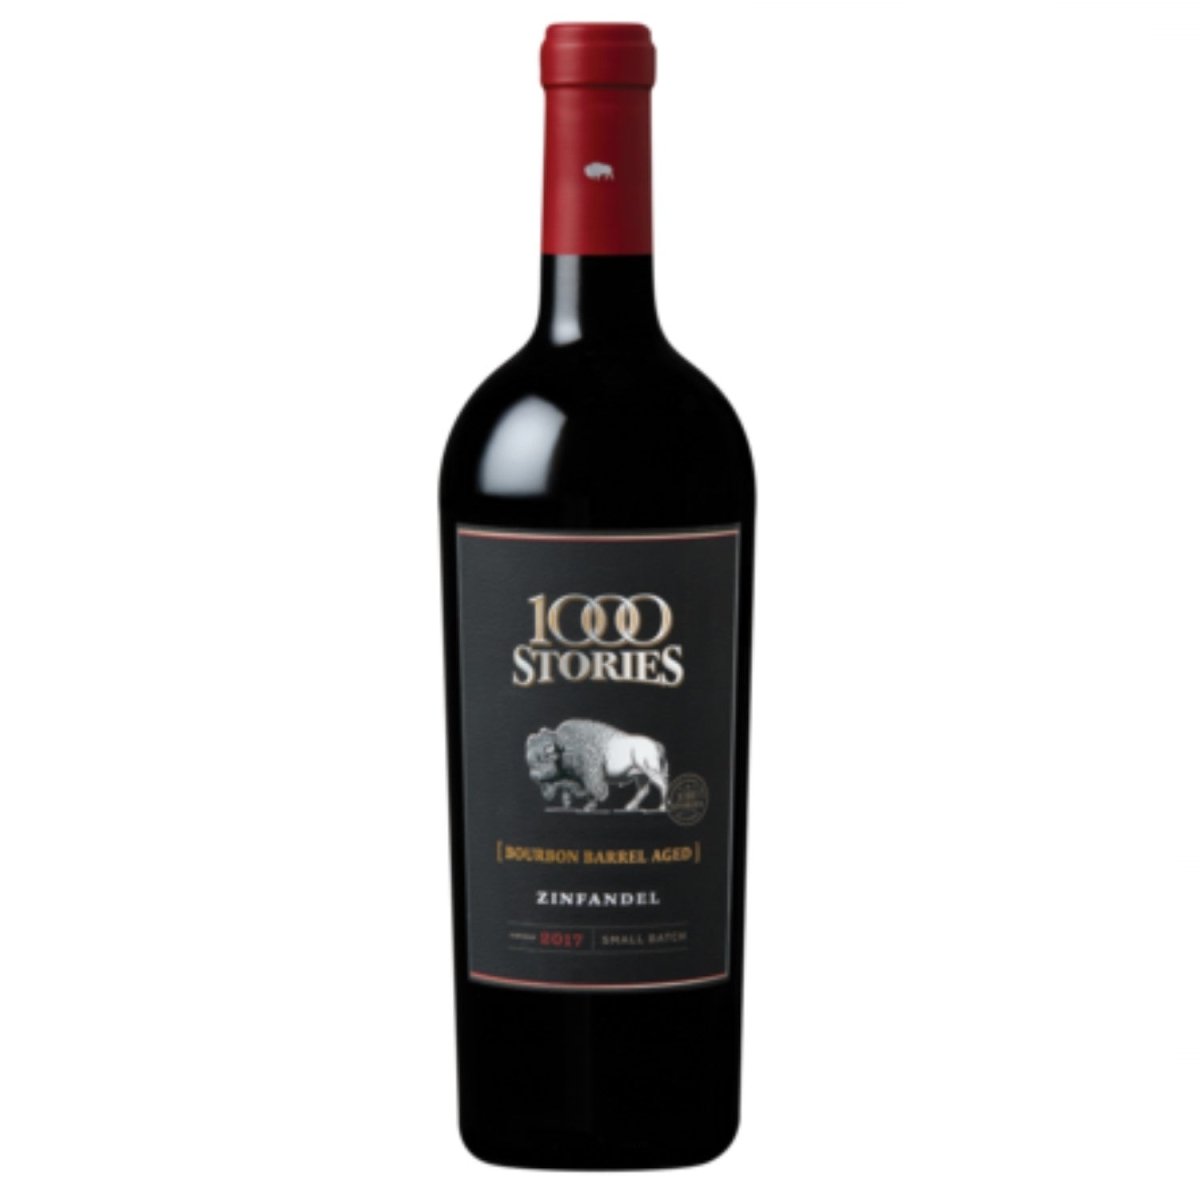 Fetzer 1000 Stories Bourbon Barrel aged Zinfandel Rotwein Wein trocken USA Kalifornien (3 x 0.75l) - Versanel -